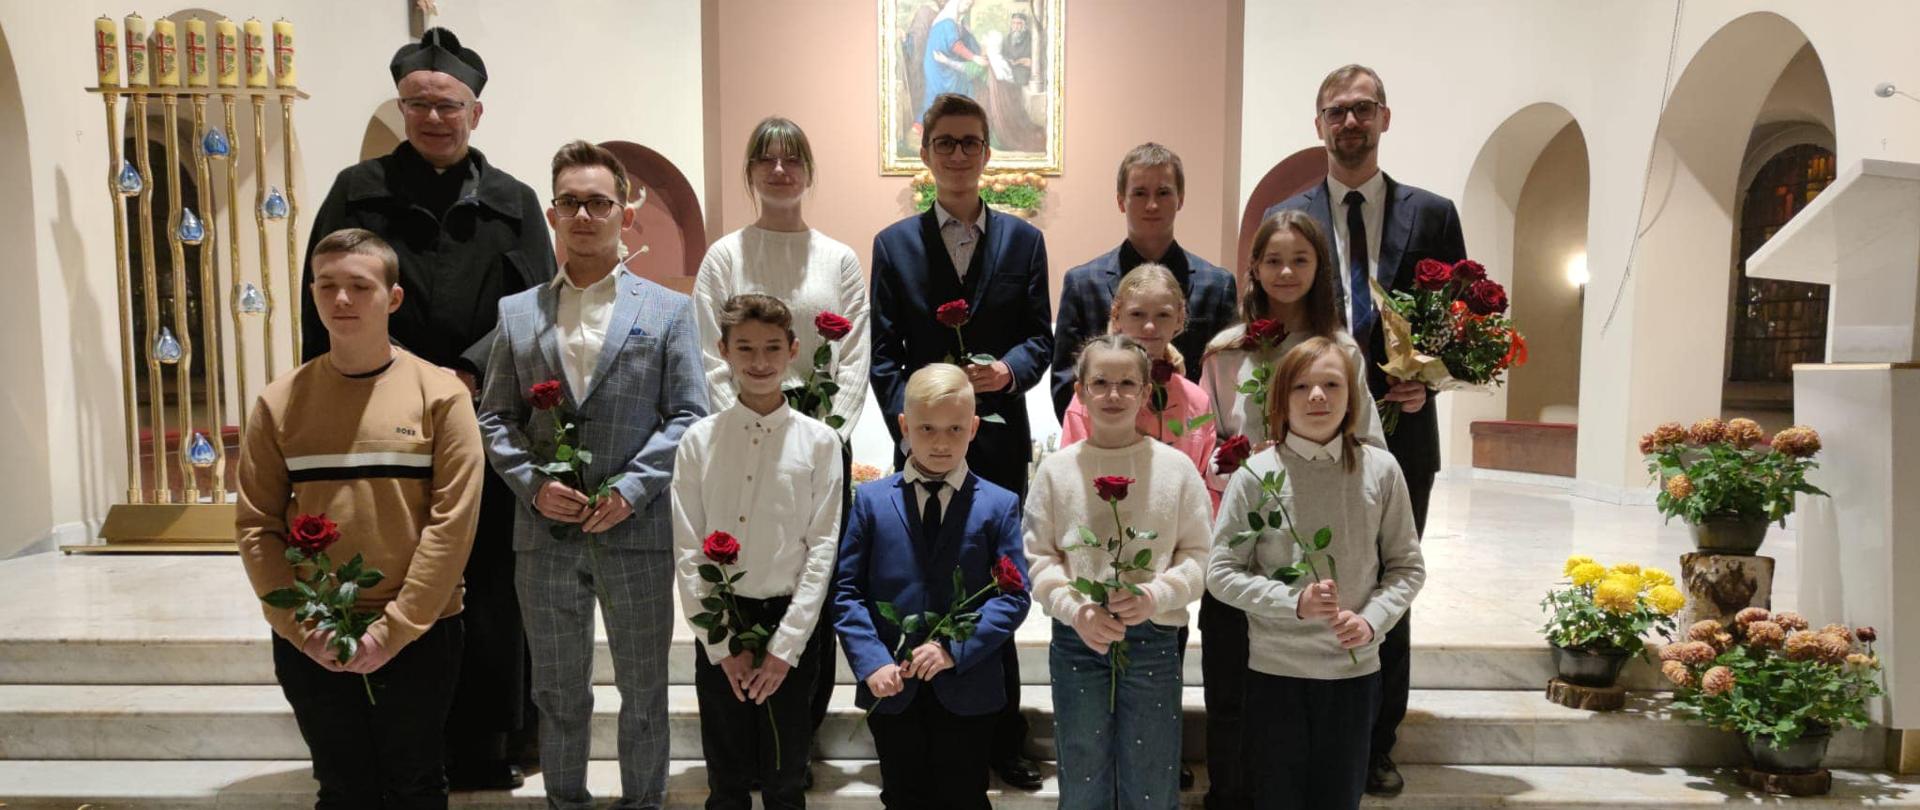 Grupa uczniów stoi przed prezbiterium kościoła, w rękach trzymają kwiaty